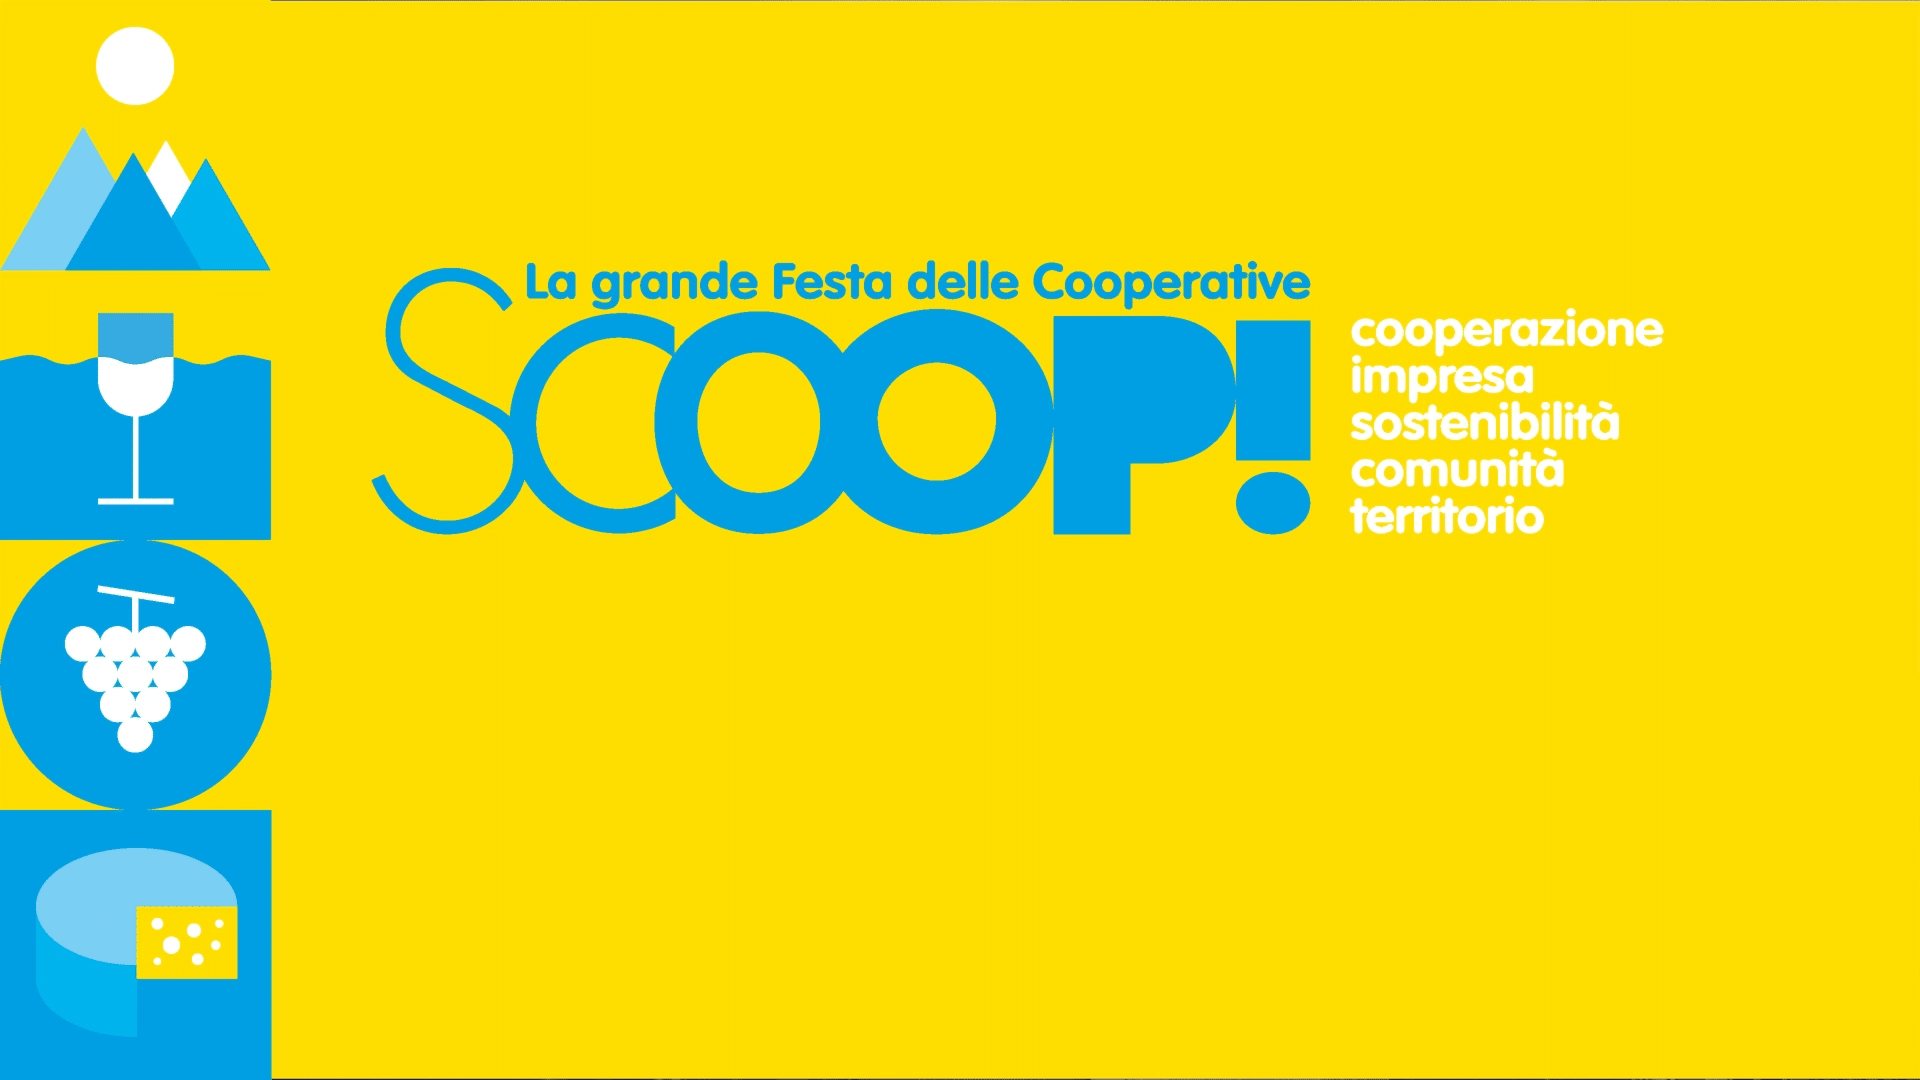 Scoop! promuove la cooperazione con Confcooperative Belluno Treviso